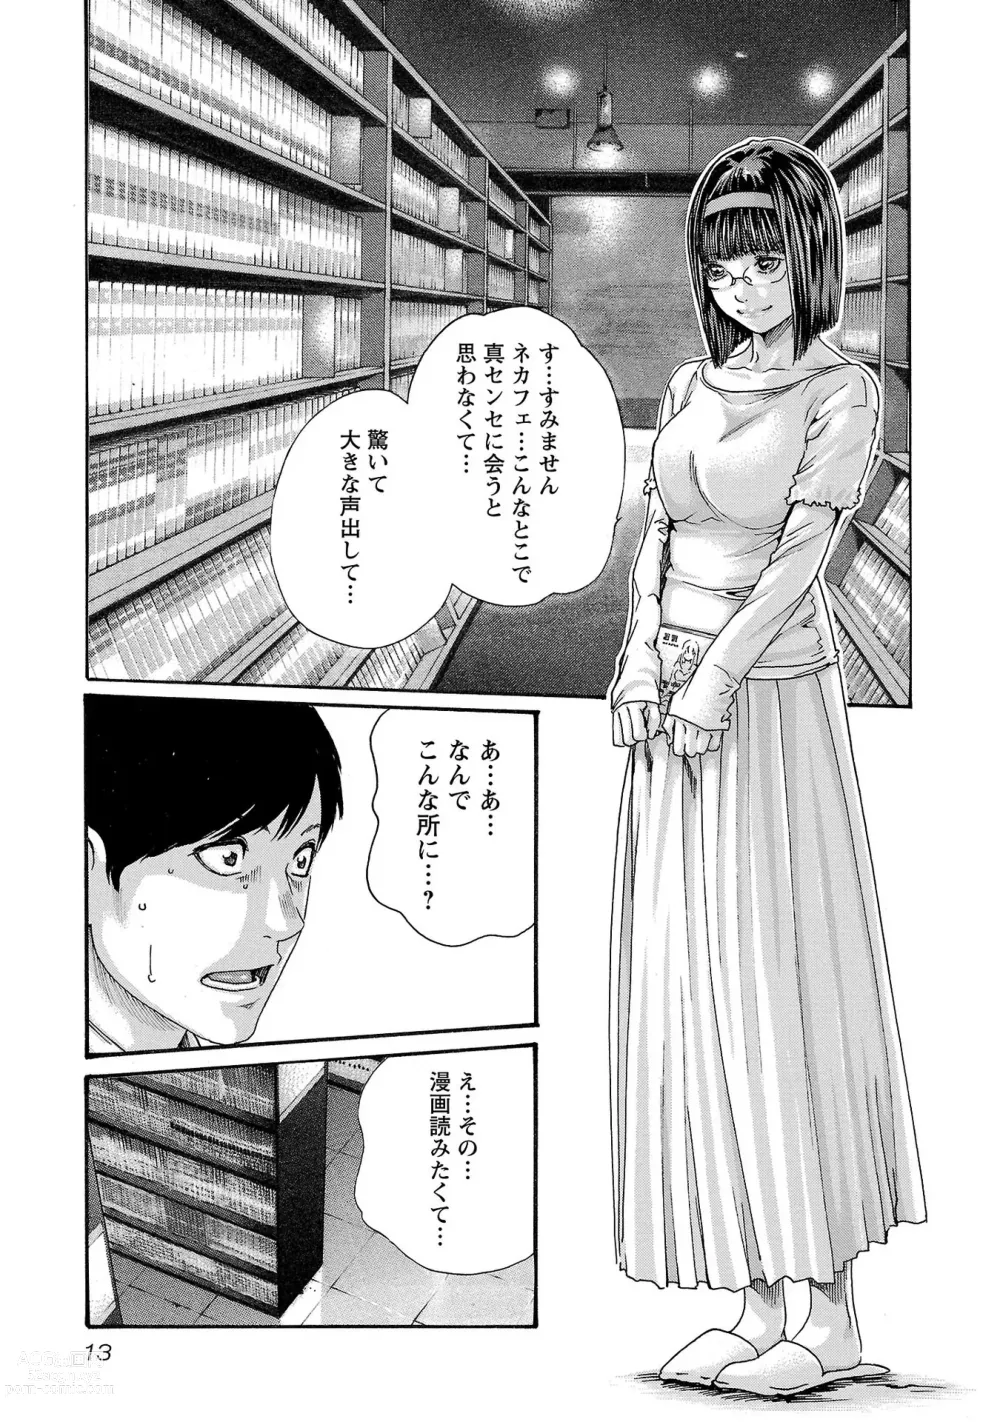 Page 14 of manga sense volume 13